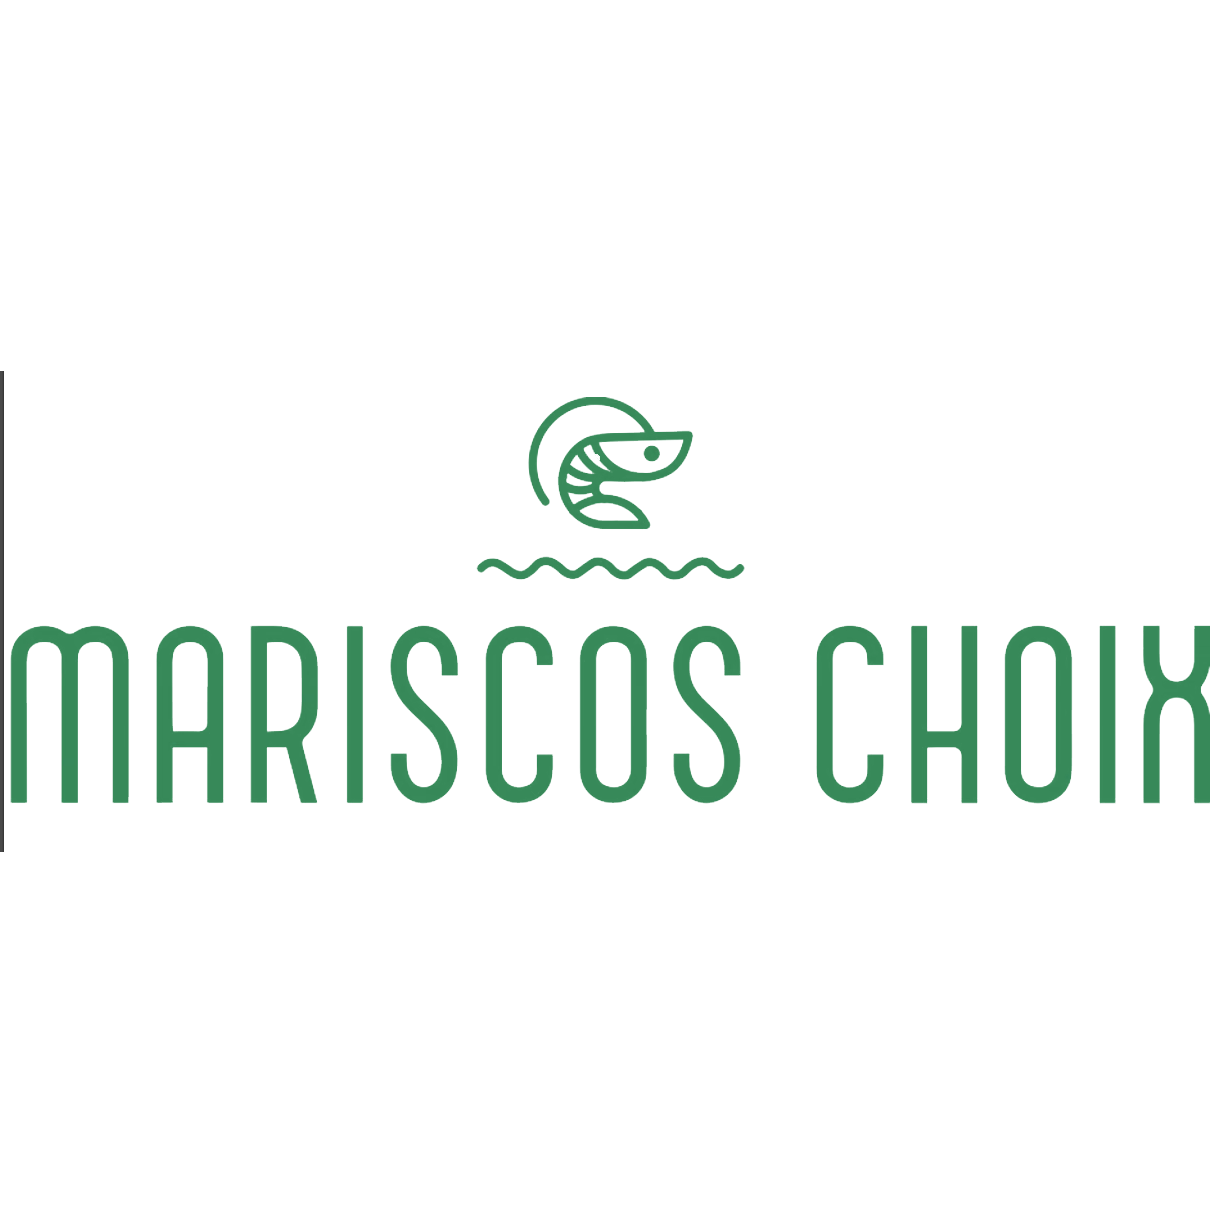 Mariscos Choix